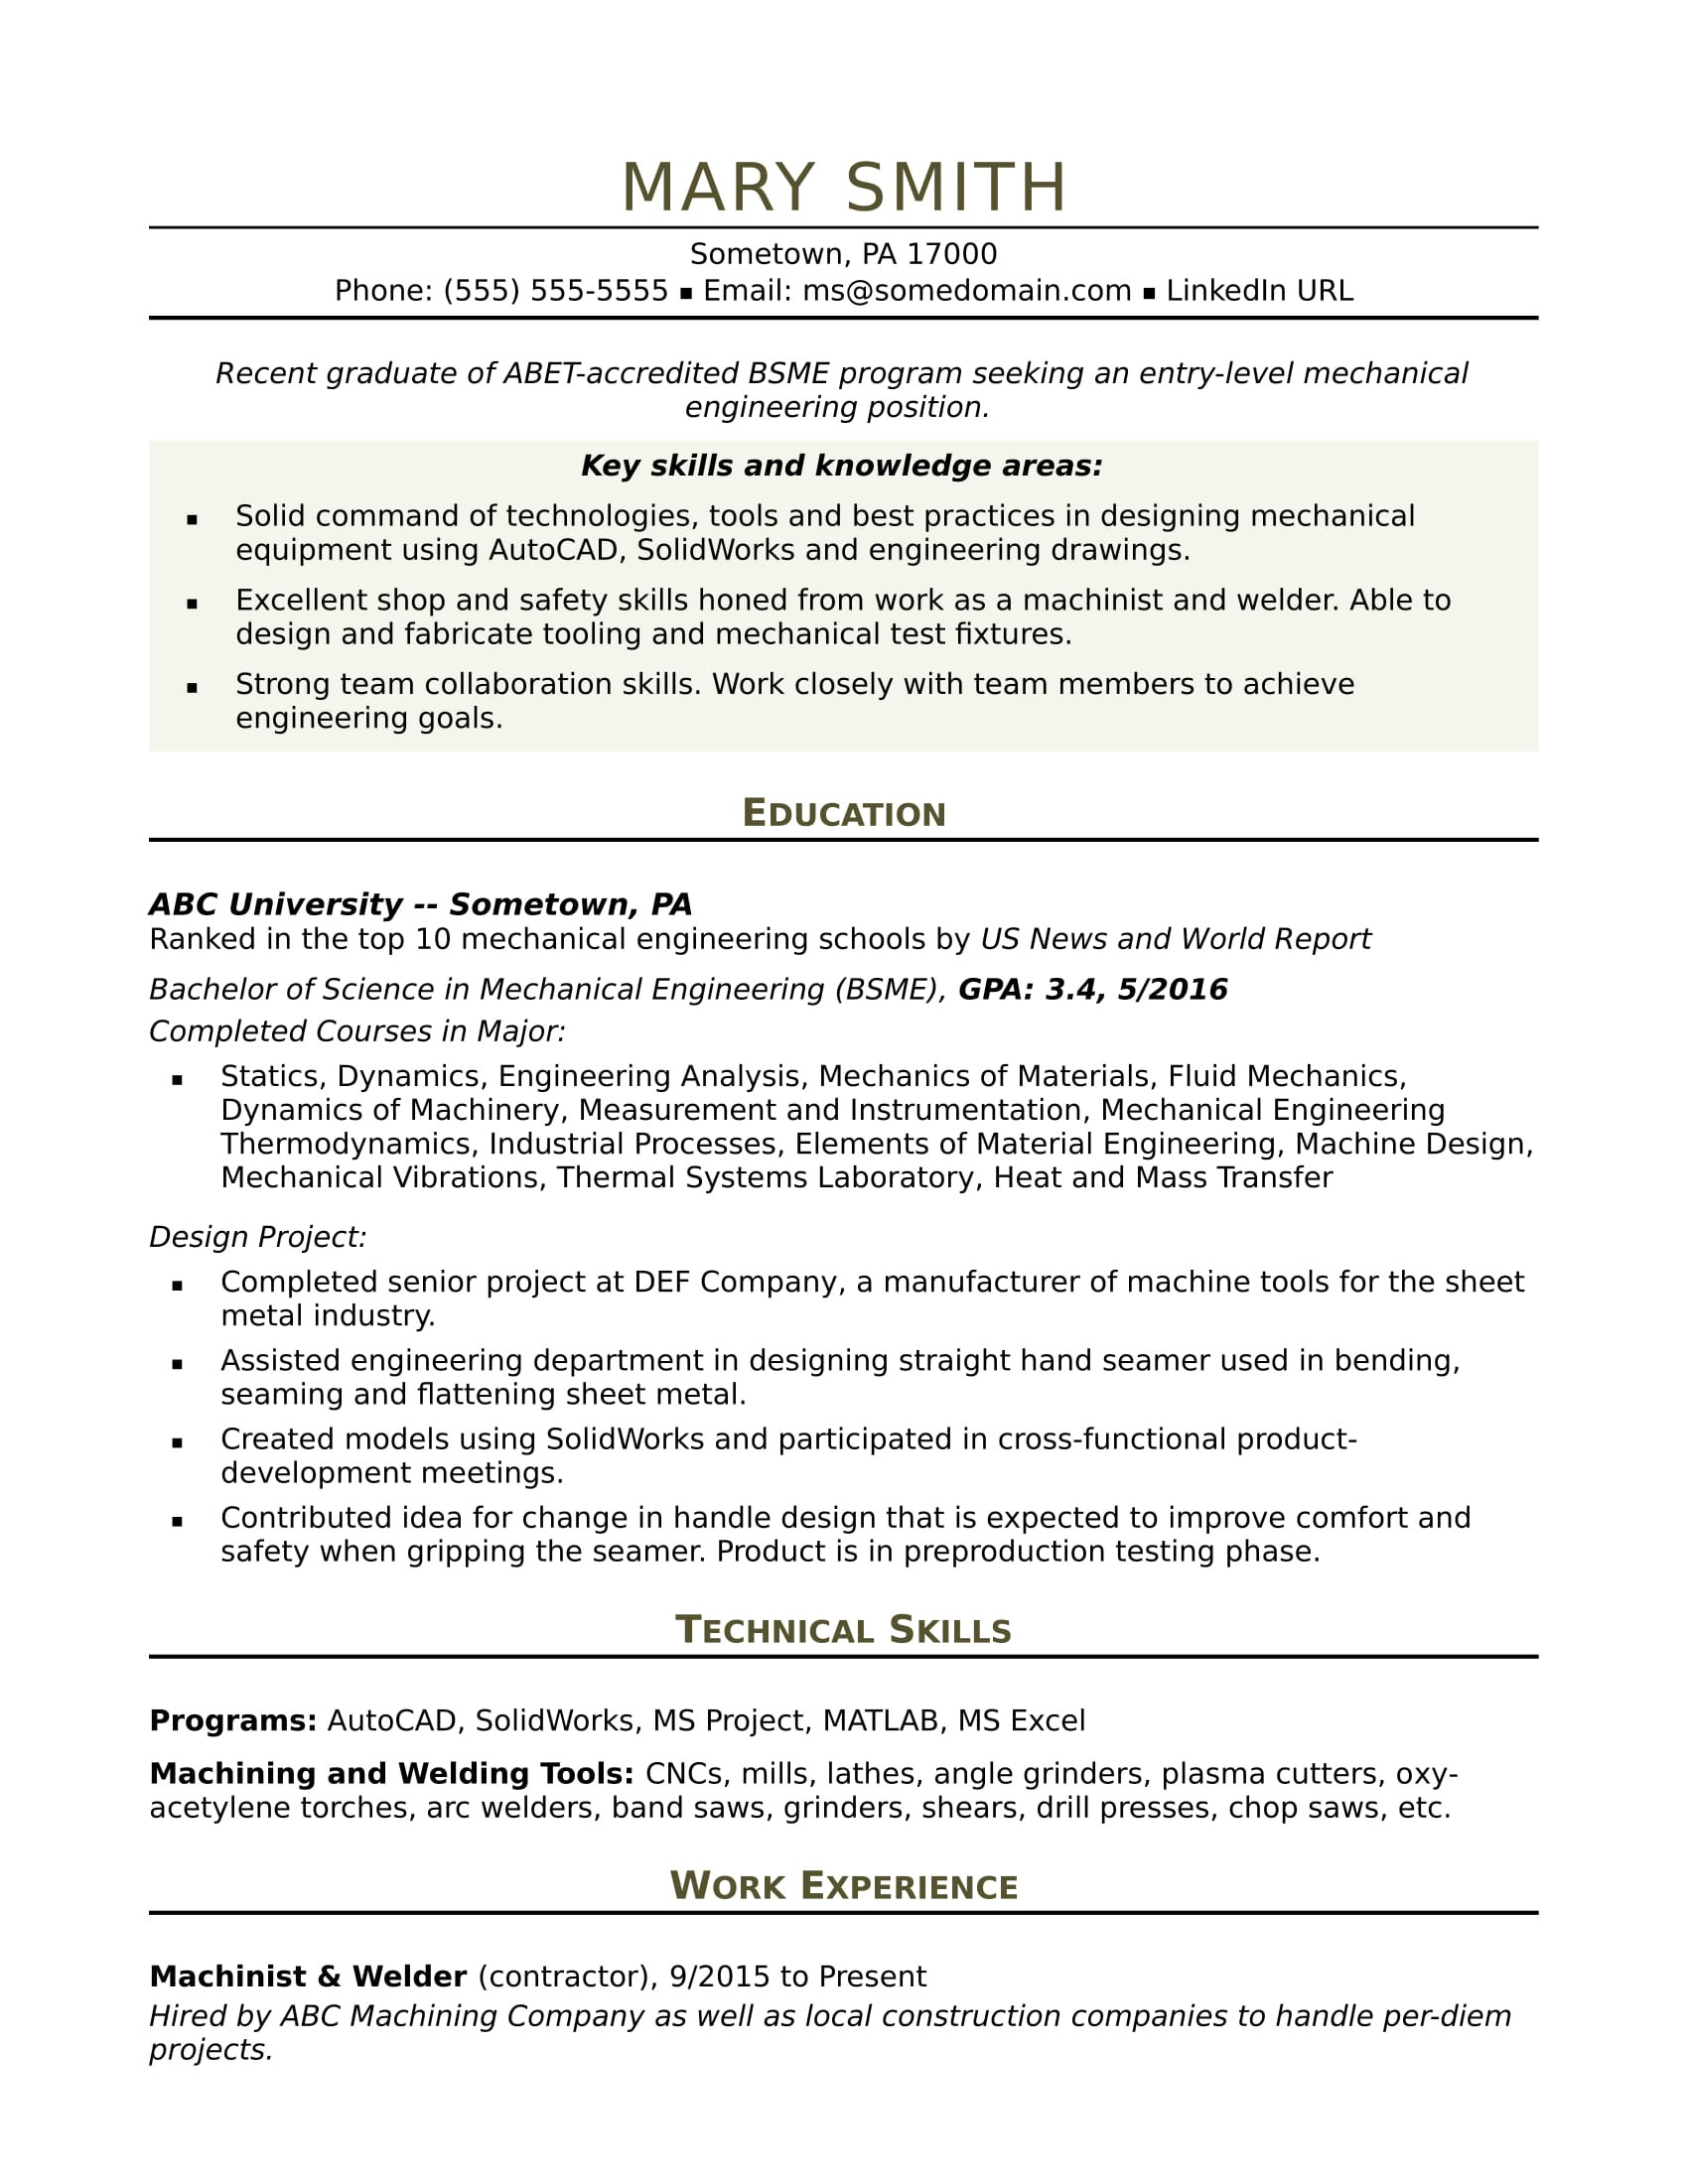 Sample Resume for Fresher Mechanical Engineering Student Mechanical Engineer Resume: Entry-level Monster.com